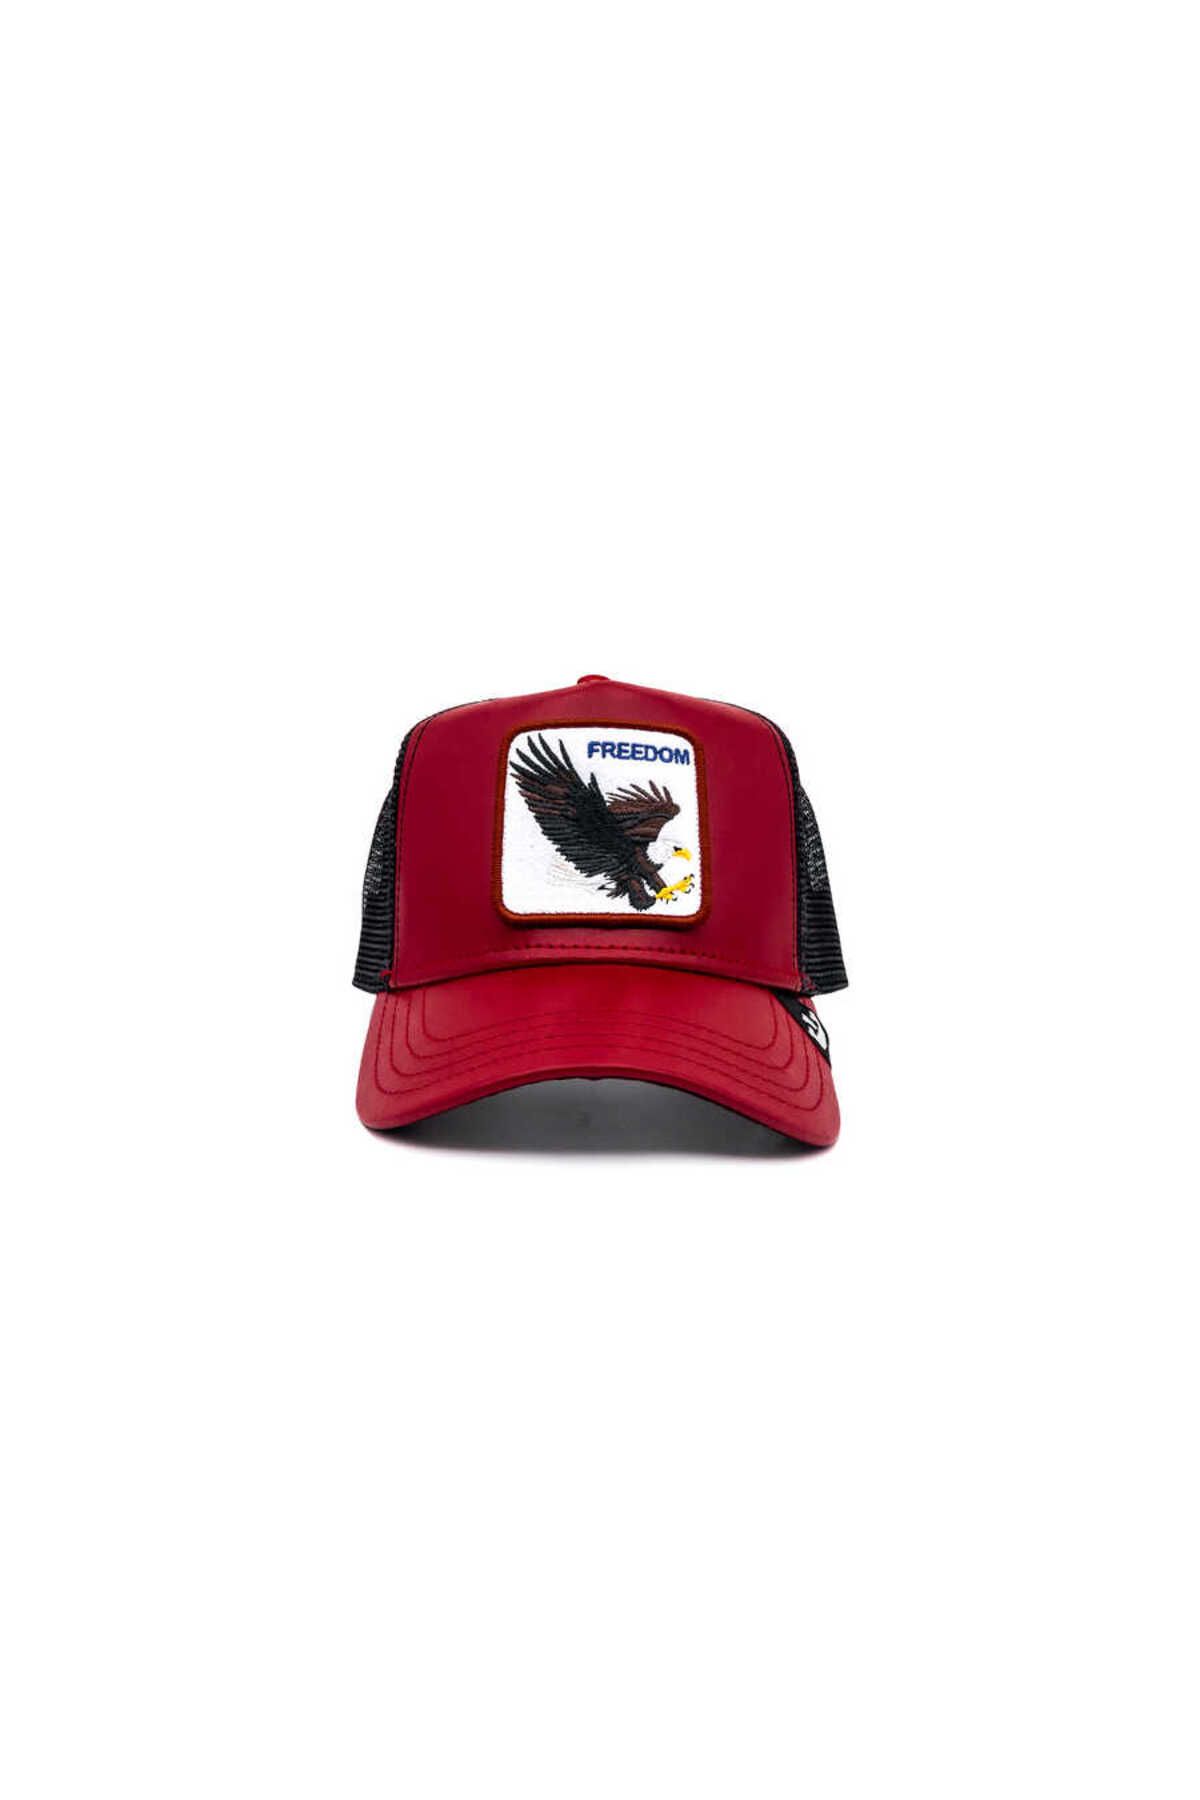 Goorin Bros Big Bird (kartal Figürlü) Kırmızı Şapka Kırımızı Standart